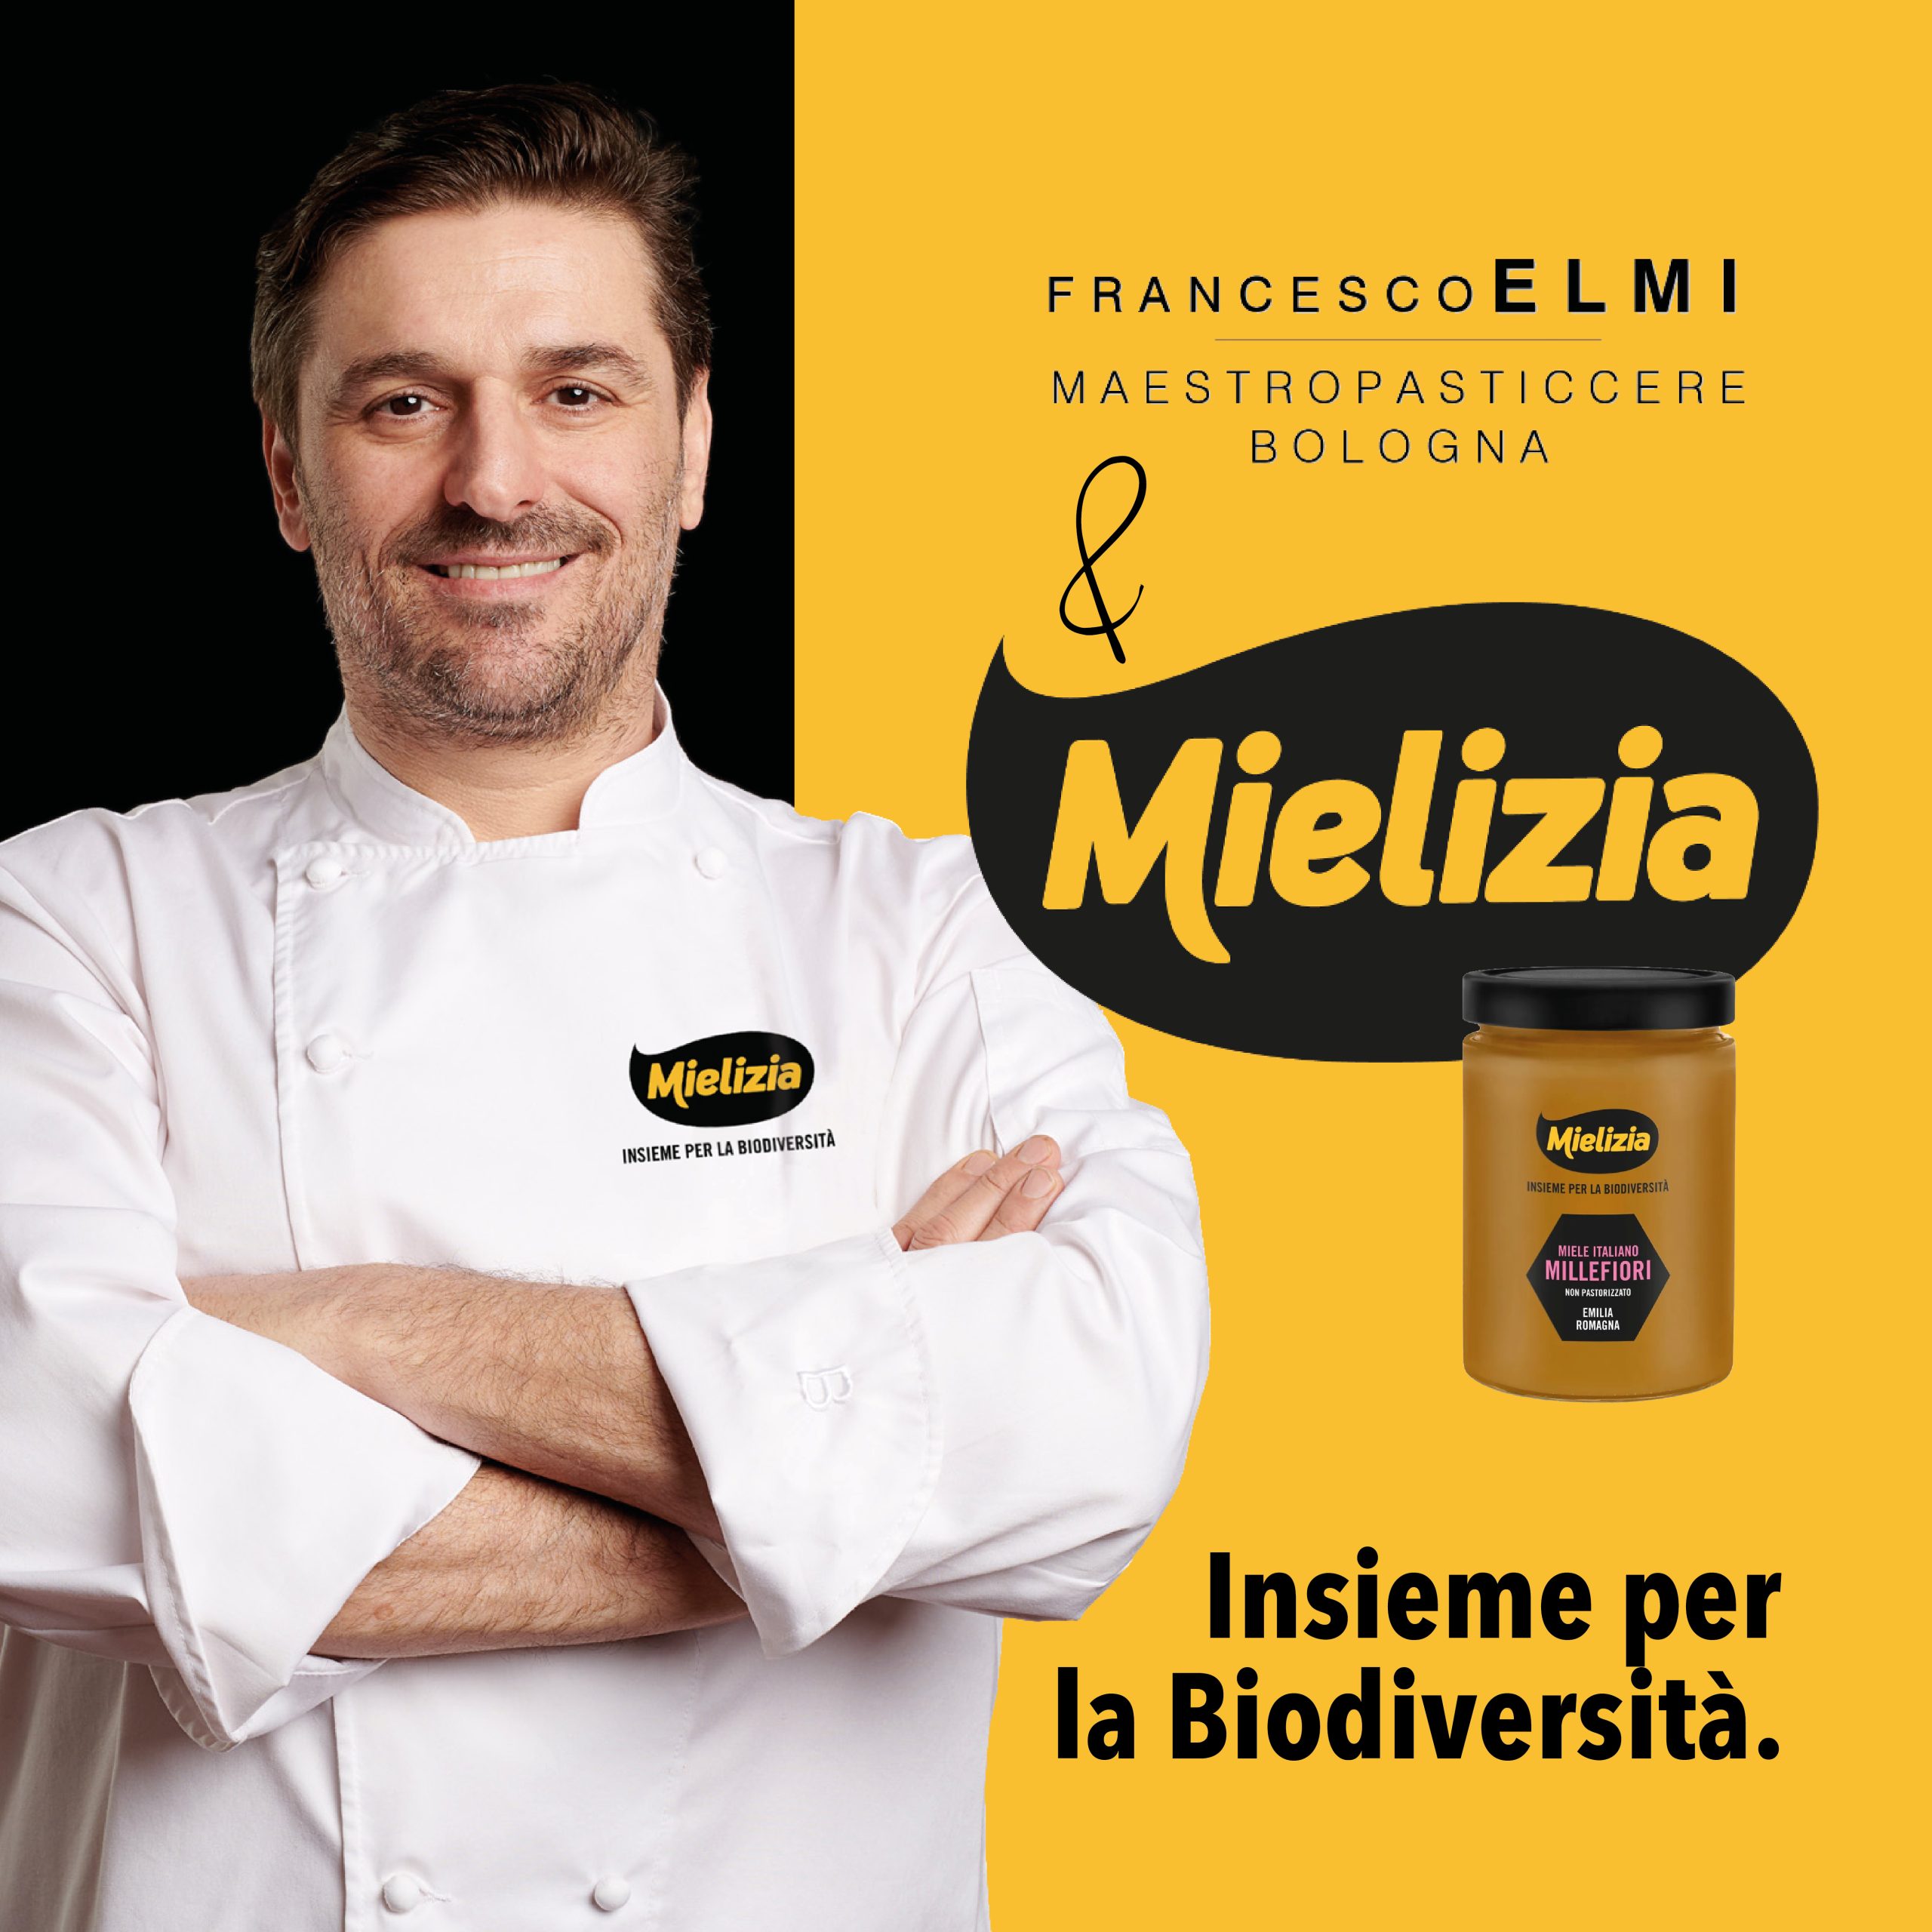 Il Maestro Pasticcere Francesco Elmi è Brand Ambassador Mielizia